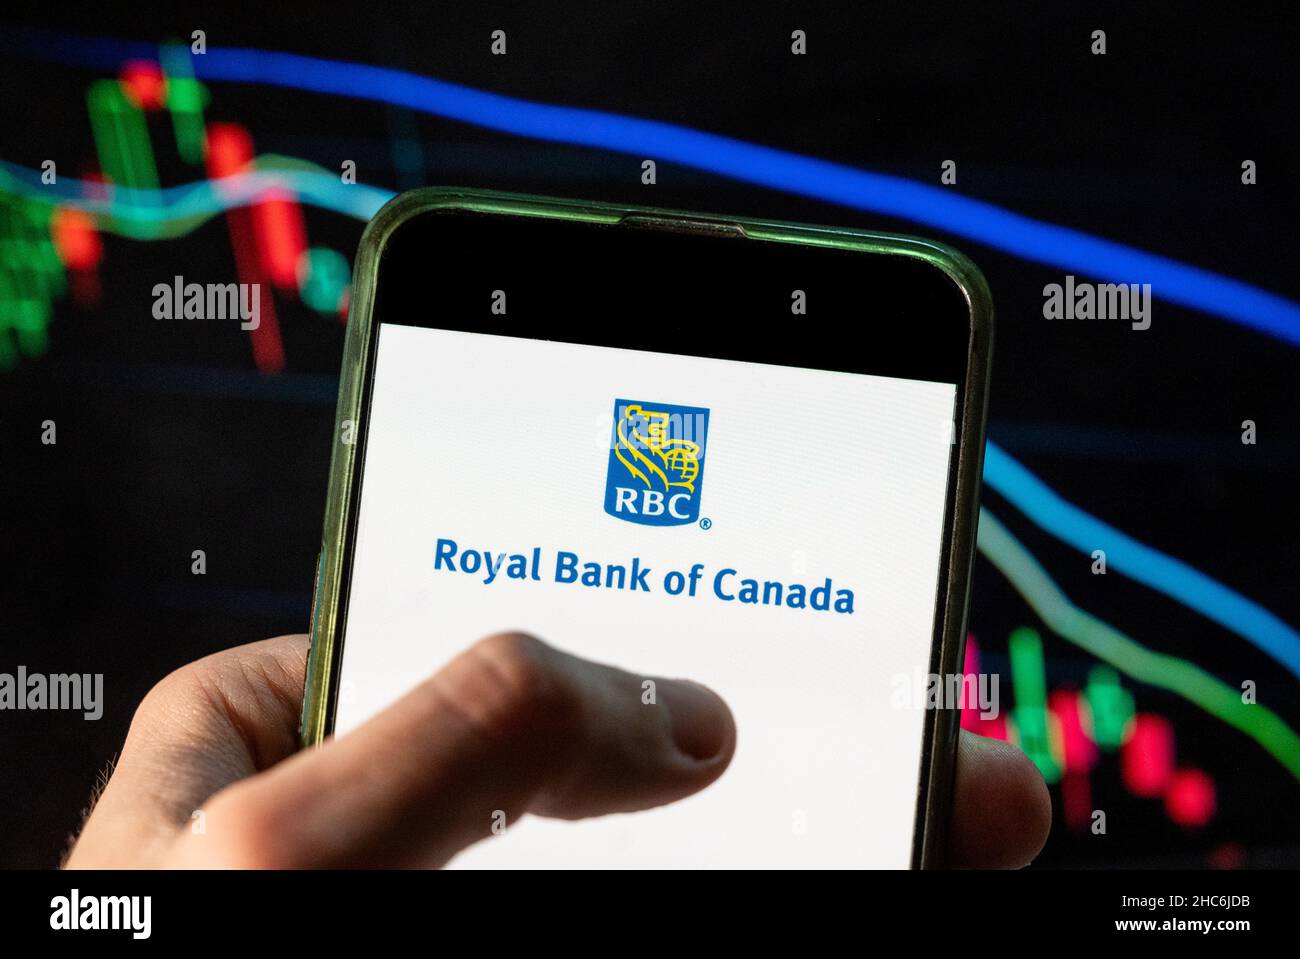 Dans cette illustration, la multinationale canadienne de services financiers, le logo RBC de la Banque Royale du Canada, est affiché sur un smartphone avec un graphique de l'indice boursier économique en arrière-plan. Banque D'Images